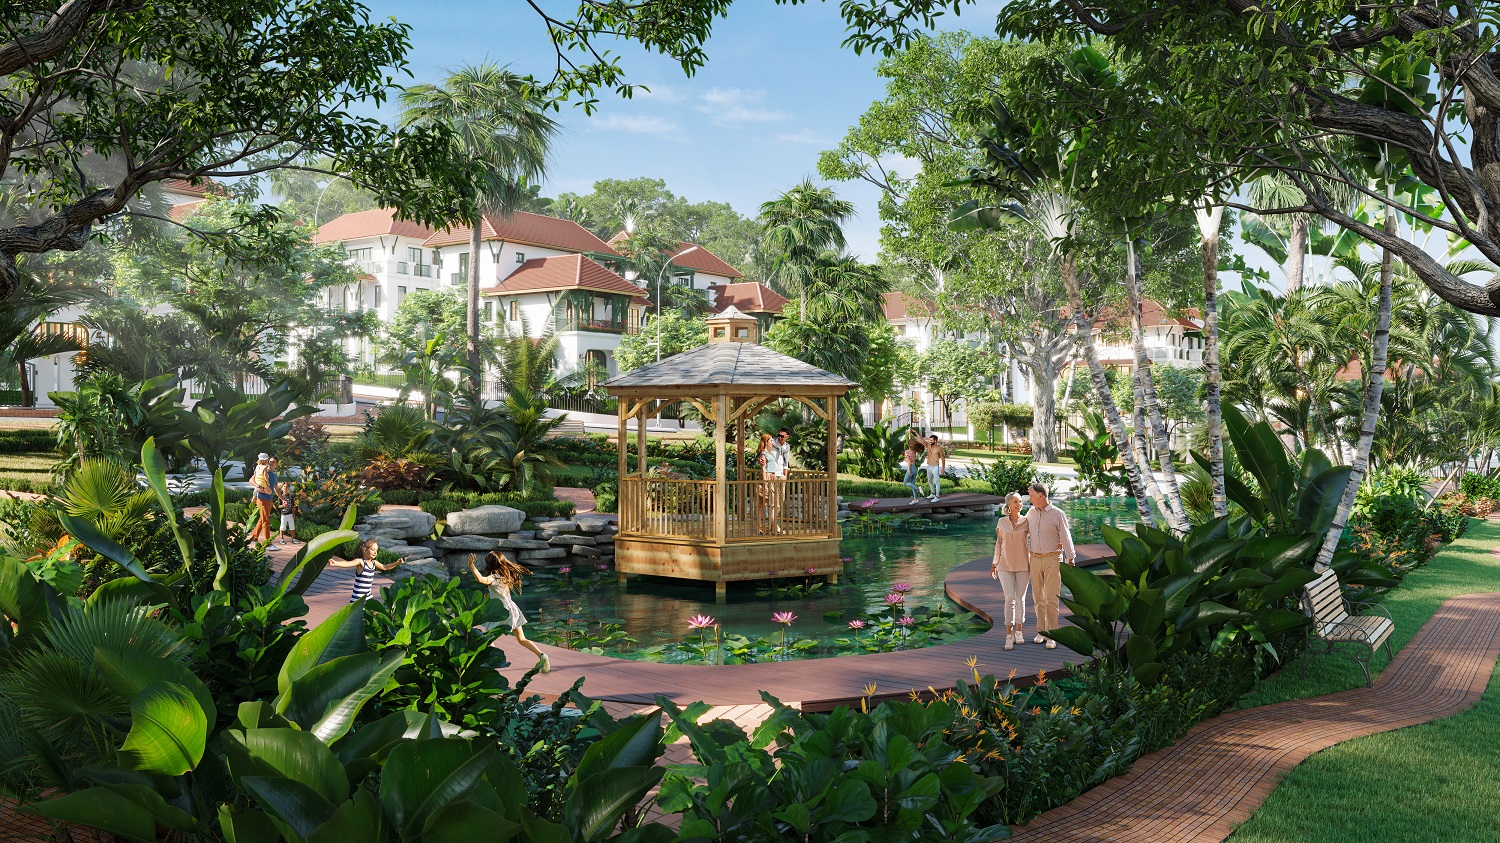 Tại đảo Ngọc Phú Quốc, vùng vi khí hậu “trong mơ” - Sun Tropical Village đang dần hình thành (Ảnh minh họa)